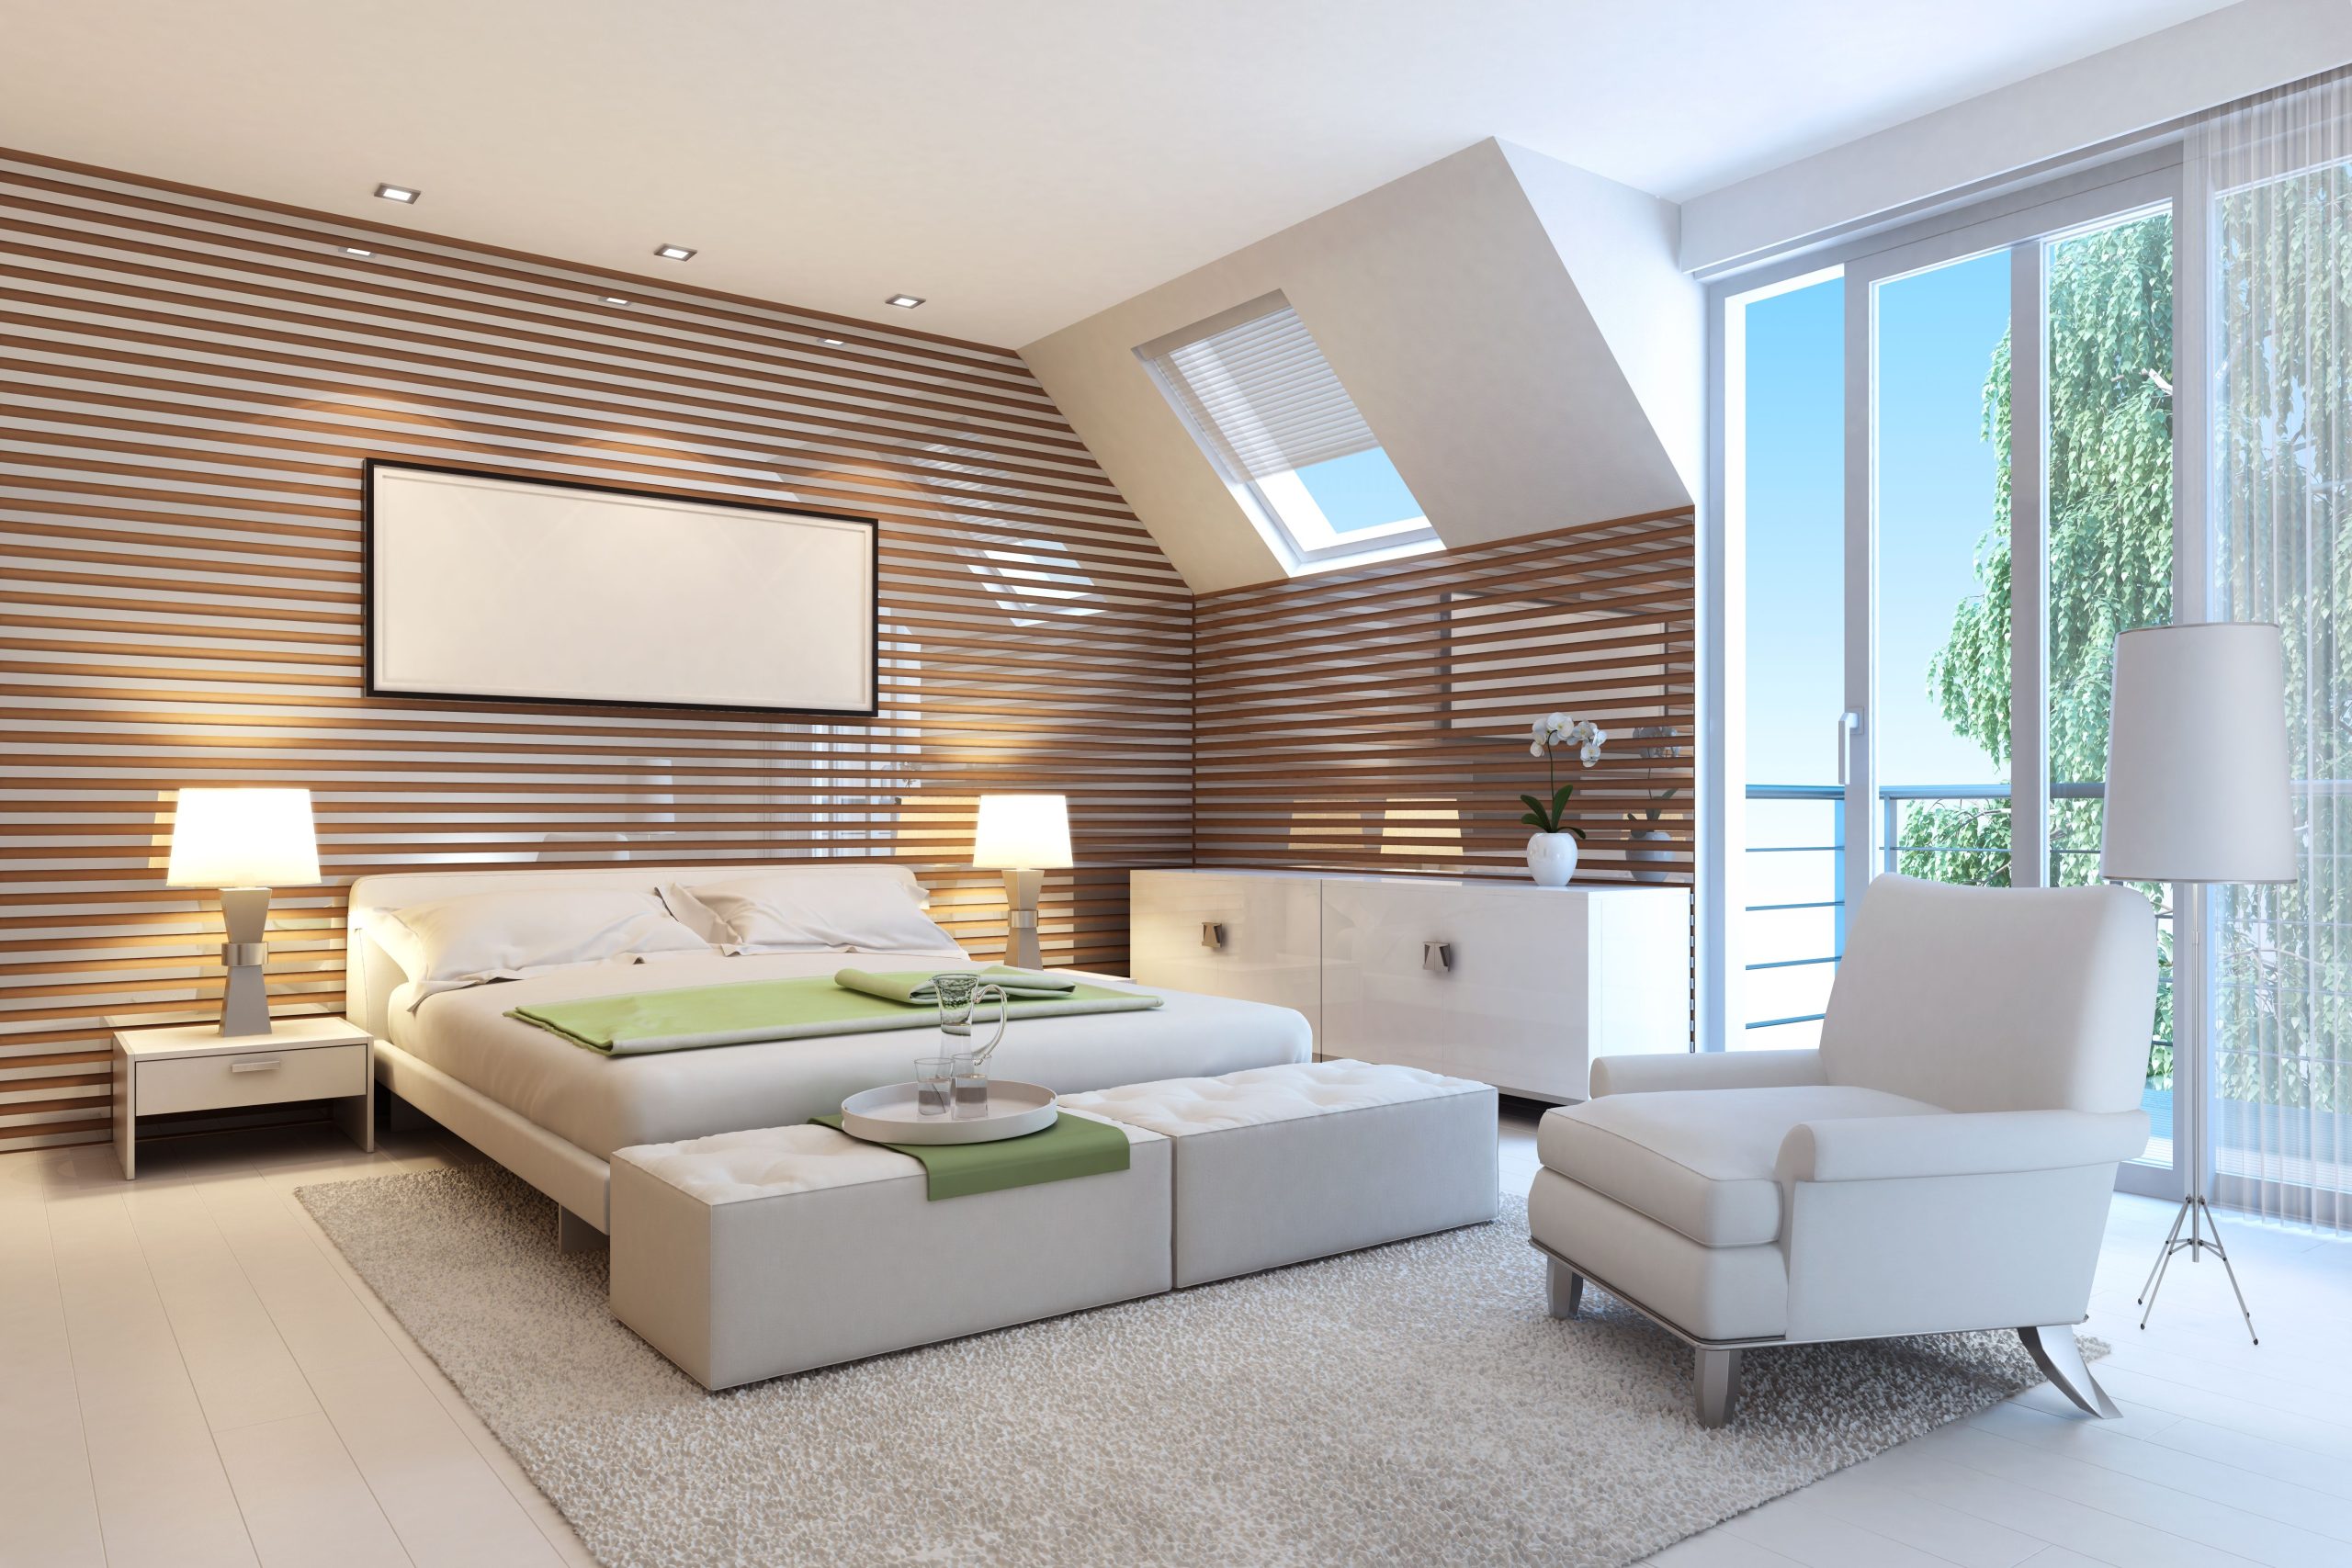 Small modern bedroom villa furniture